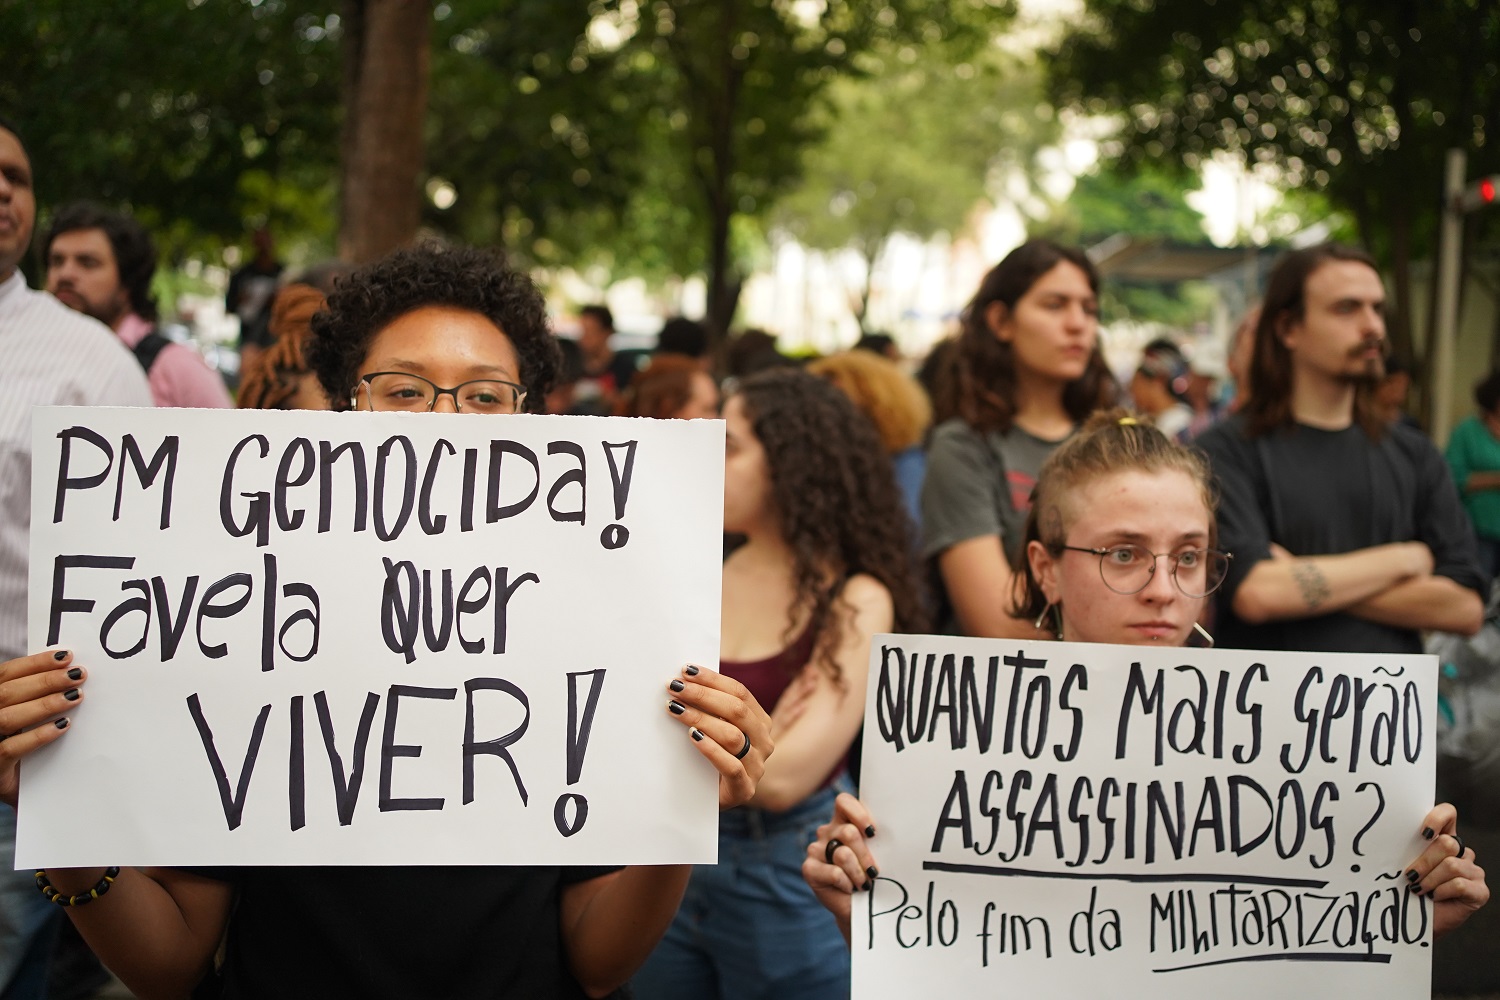 Manifestantes seguram cartazes em protesto contra o massacre de Paraisópolis.  Foto Felipe Beltrame/NurPhoto